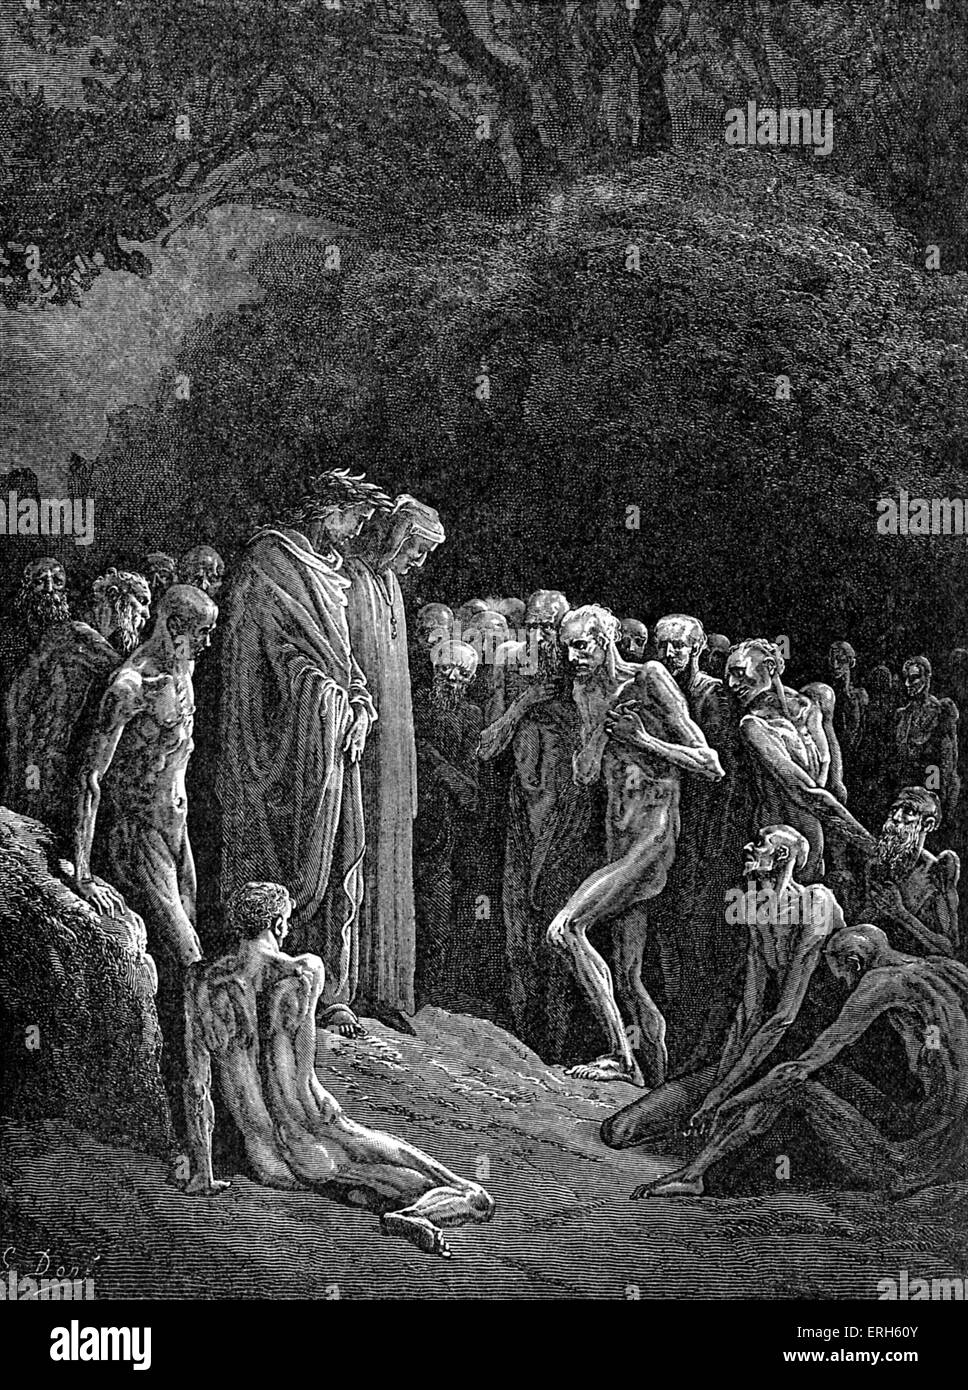 Dante's el purgatorio, parte de su Divina Comedia. Ilustración de Gustave Doré. Título: "La sombra de las formas, que parecen'd cosas muertas muertos, señaló en sus profundos ahondaba raro prodigio